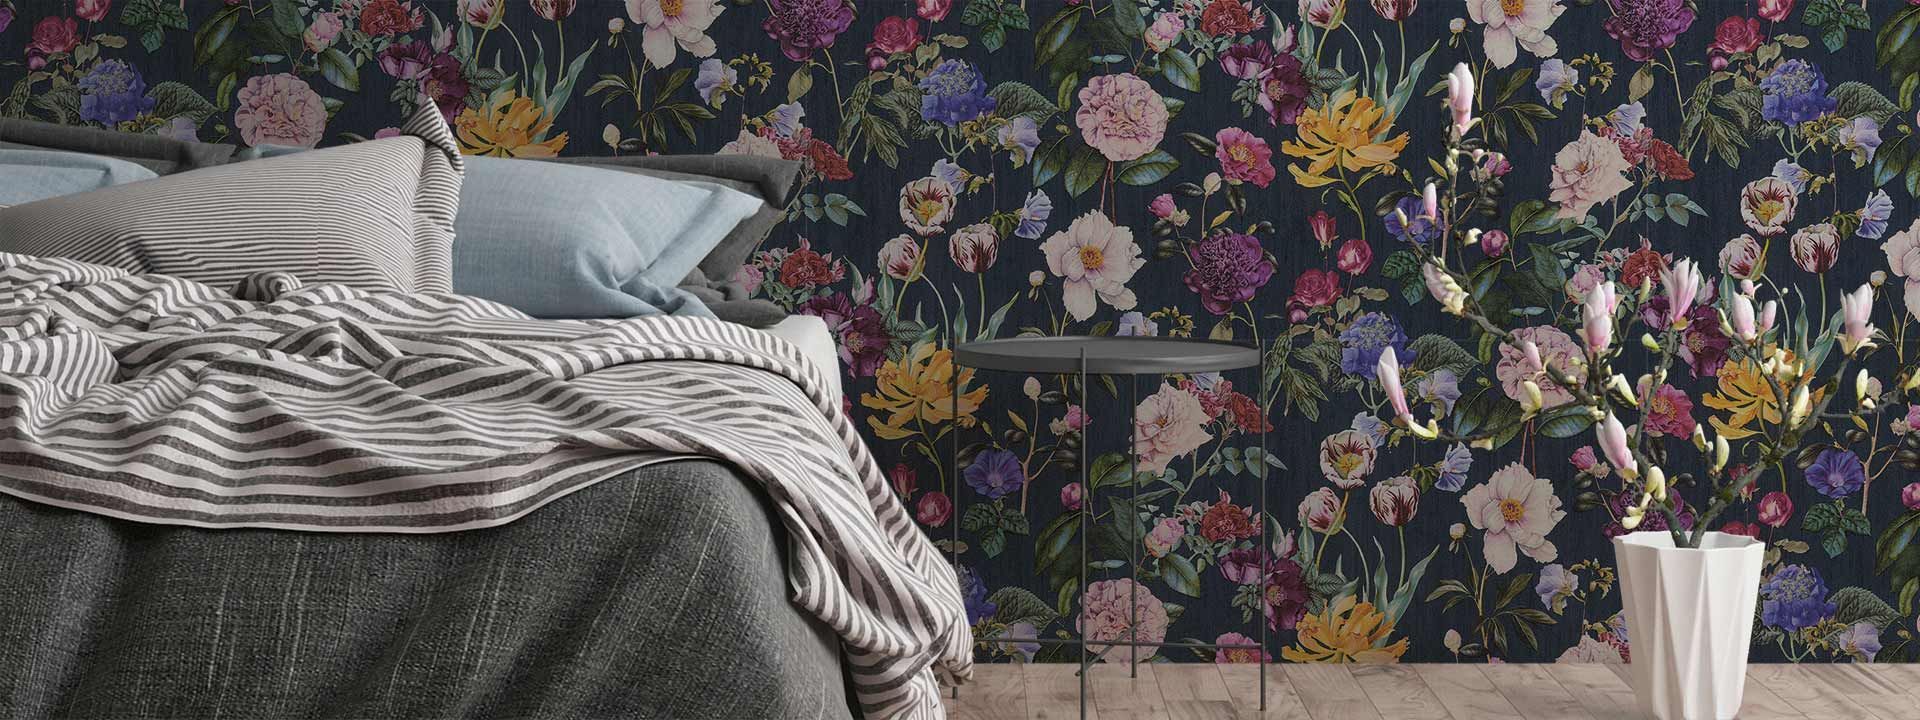 Tapeten mit Blumen-Design liegen im Trend » online kaufen